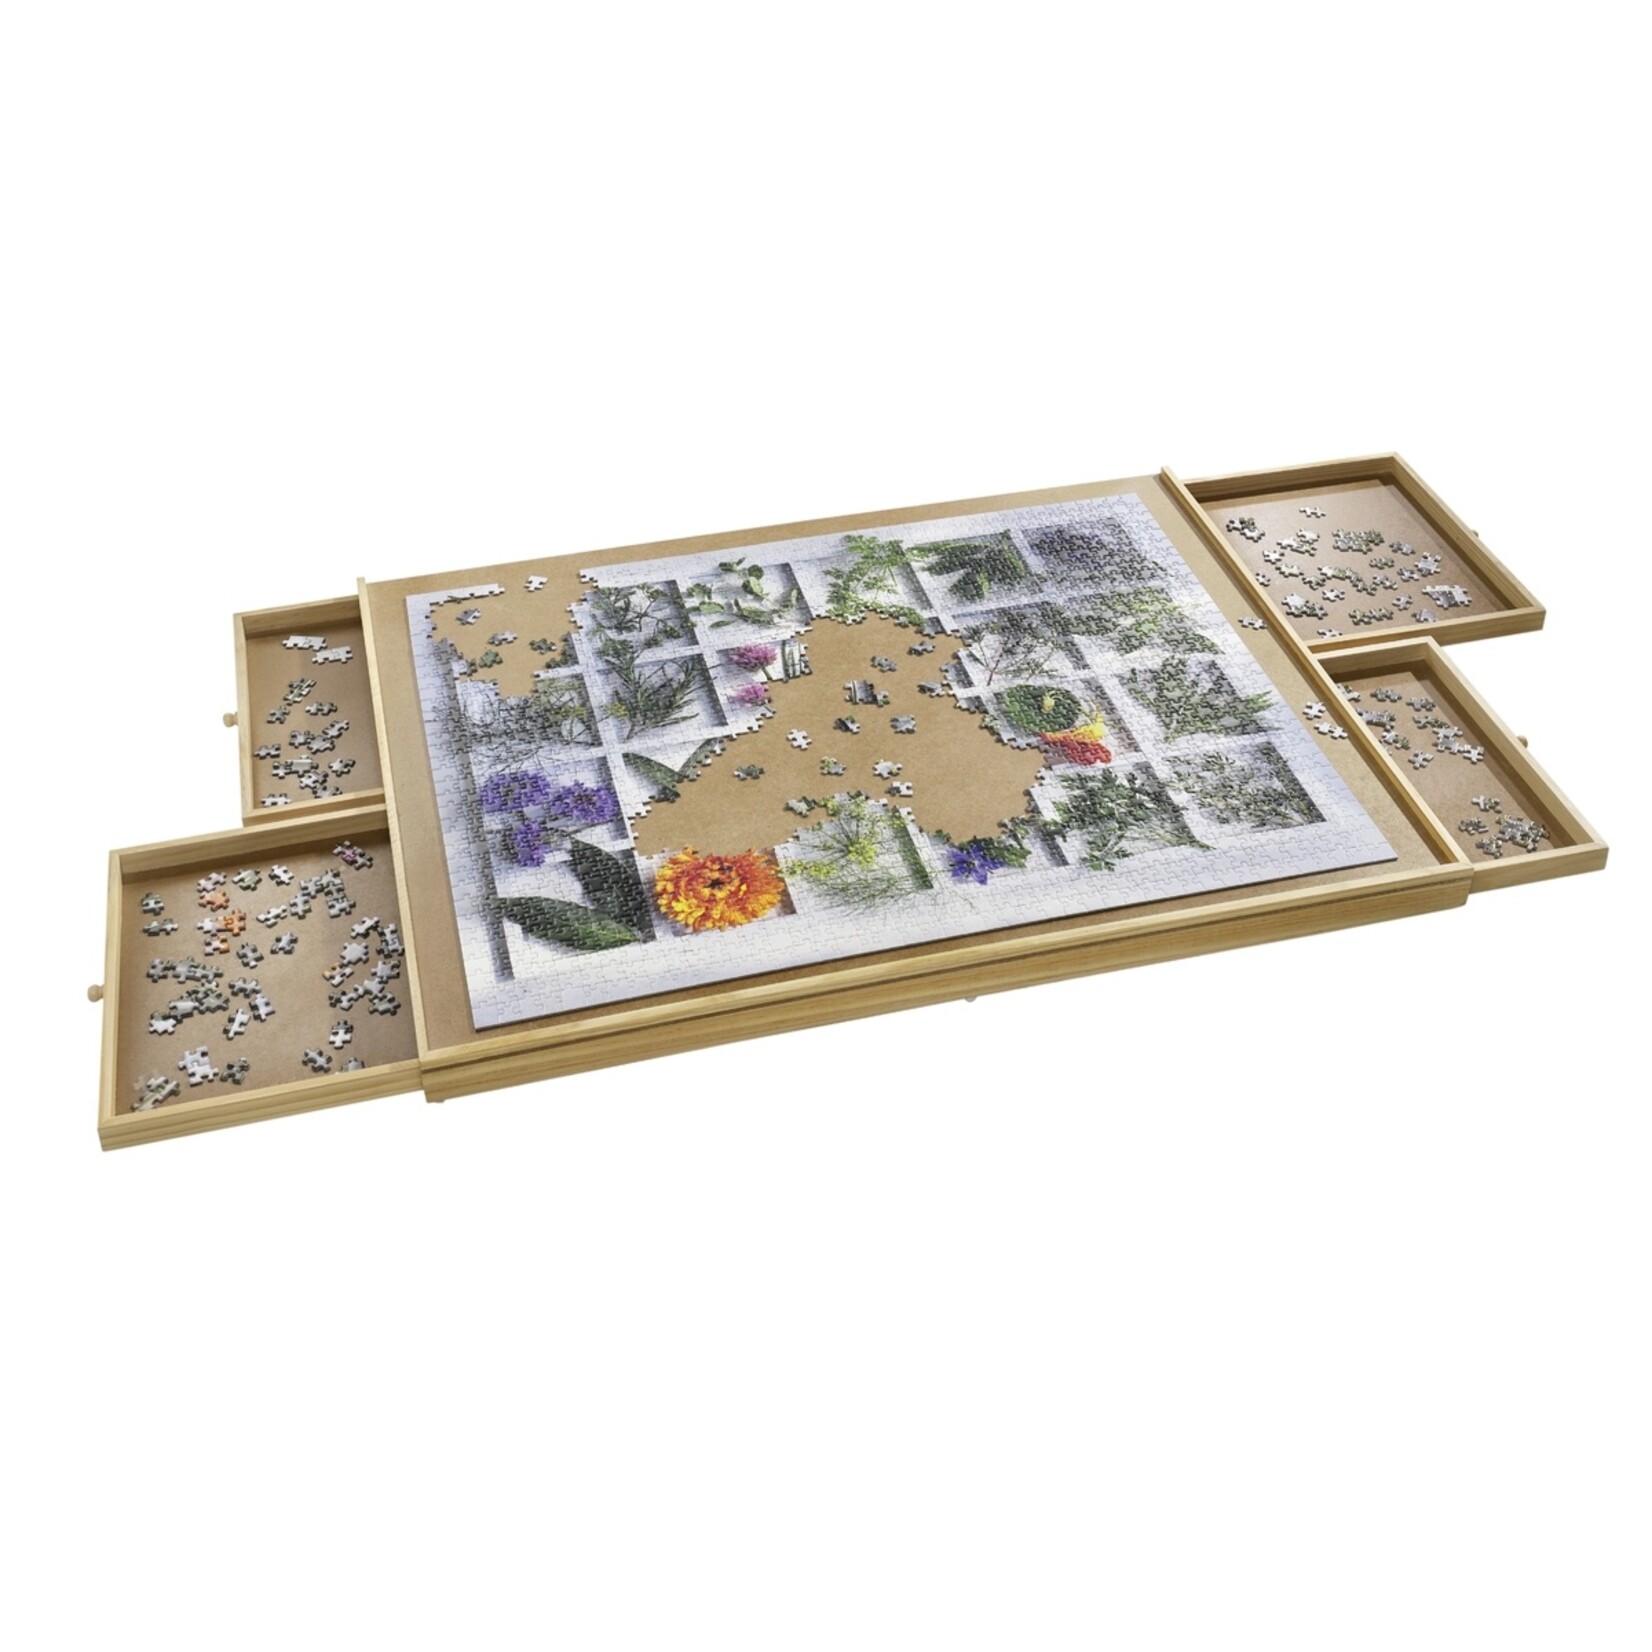 Haushalt Puzzelplaat met 4 Lades voor 1500 Stukjes – Puzzelplank / Puzzeltafel